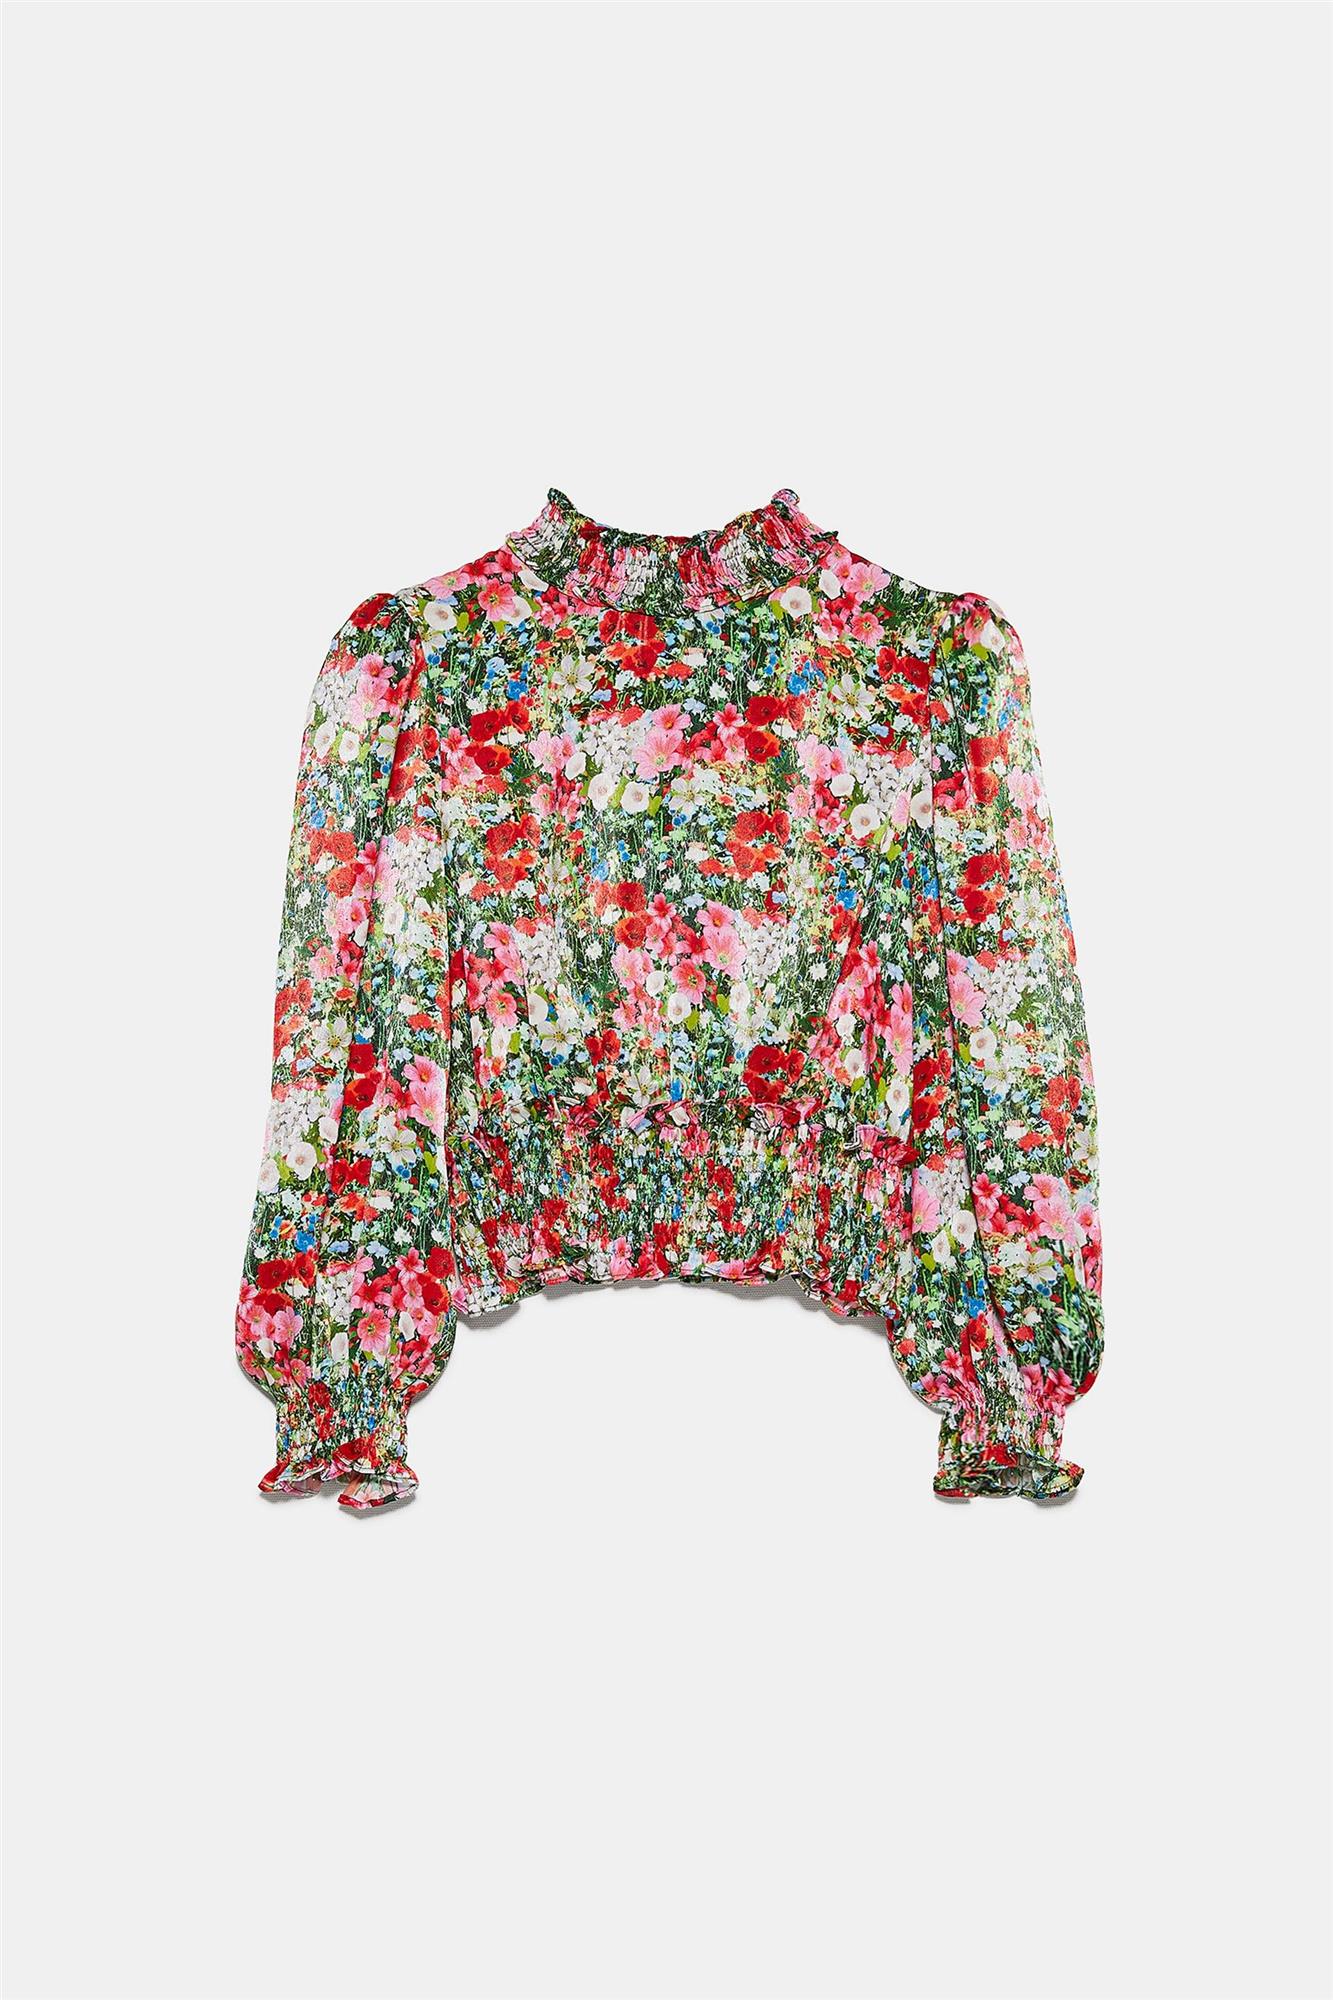 Blusa con estampado floral, Zara. 